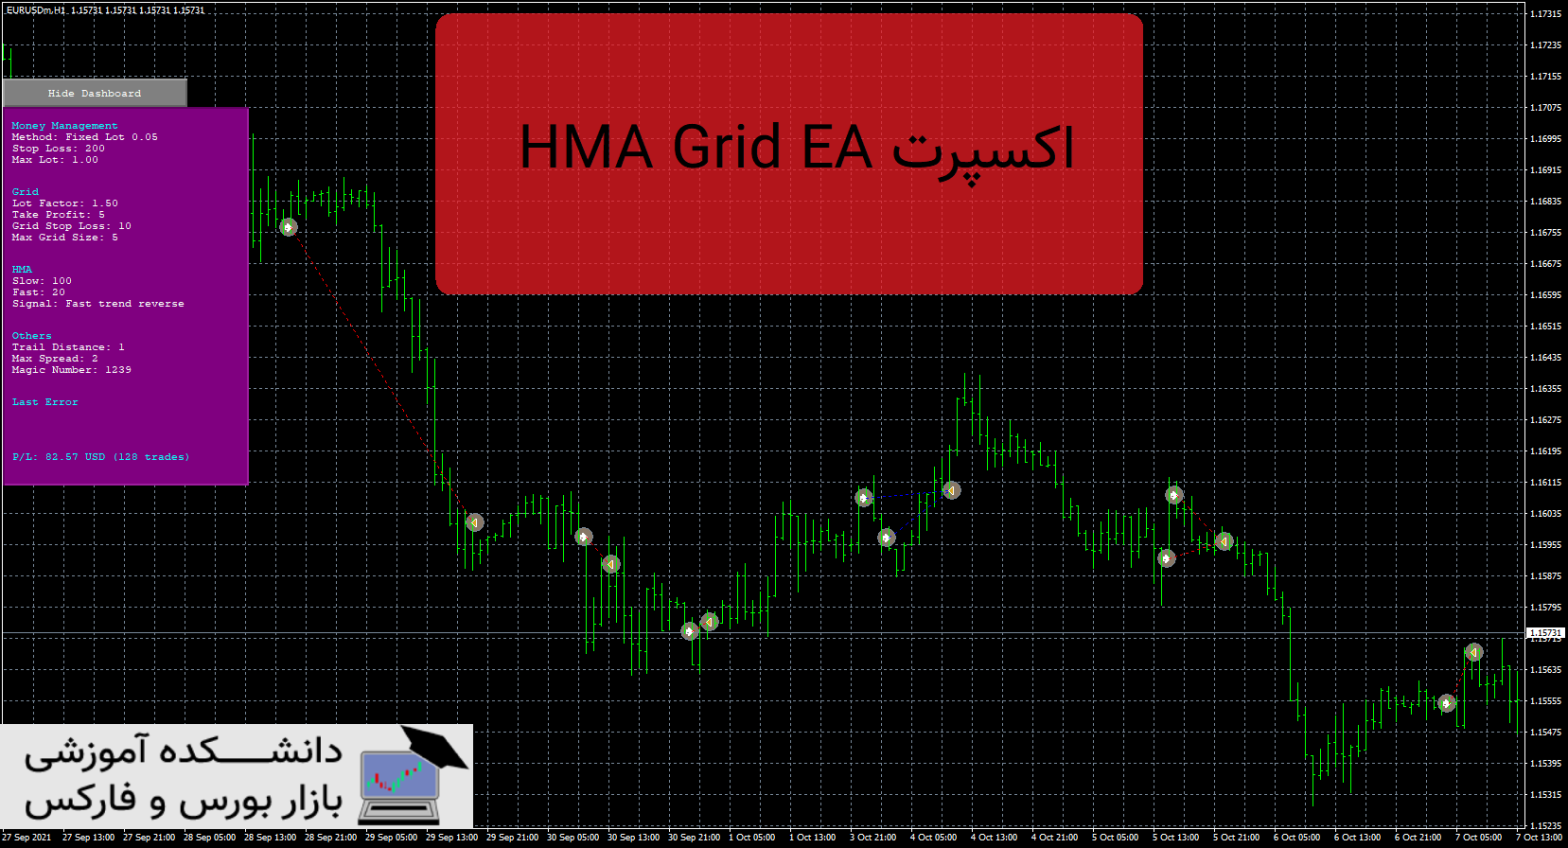 HMA Grid EA دانلود و معرفی اکسپرت